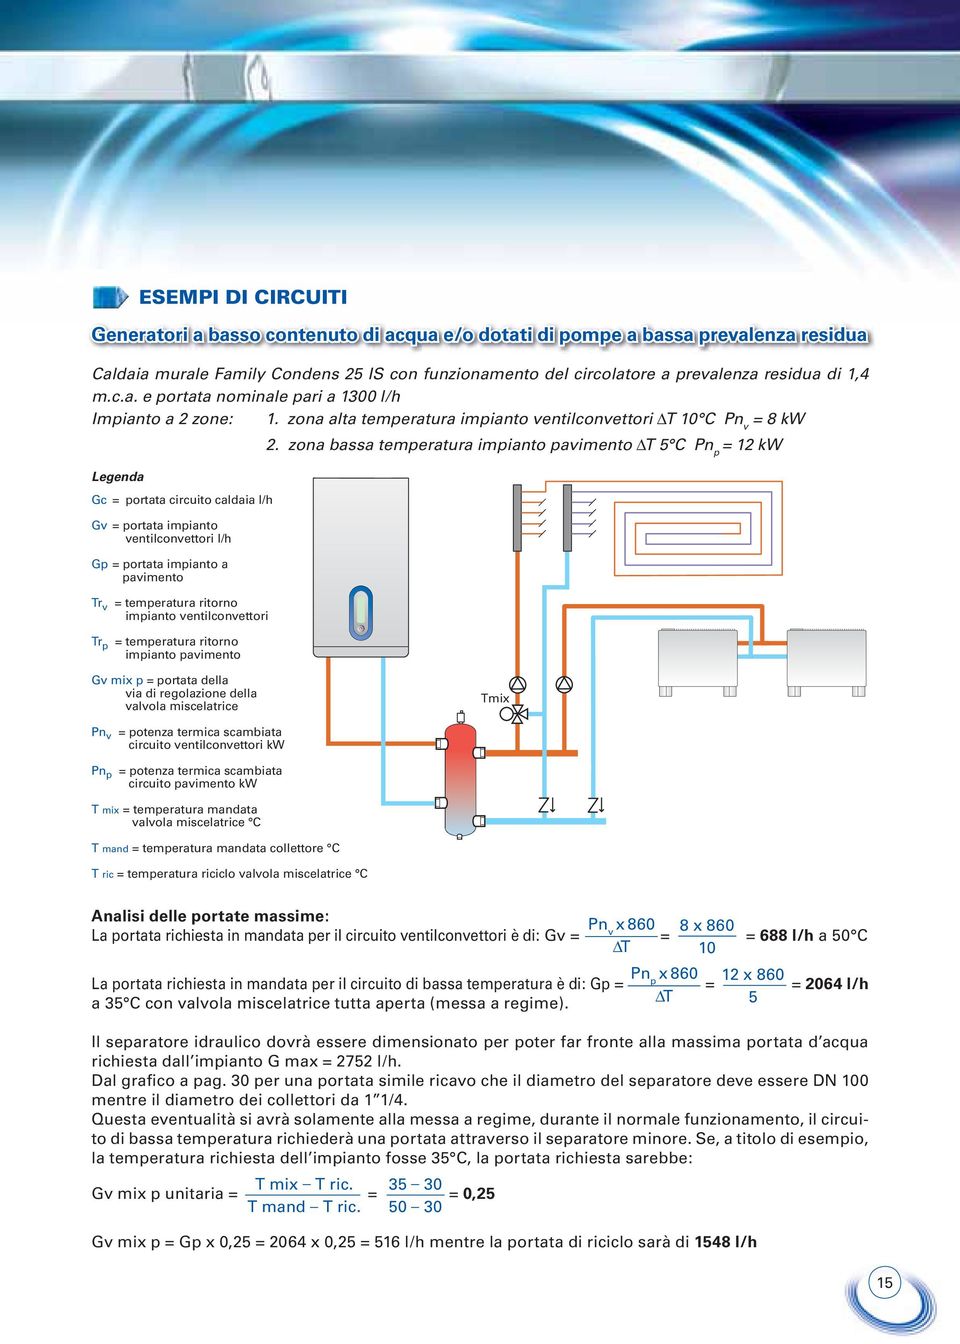 zona bassa temperatura impianto pavimento ΔT 5 C Pn p = 12 kw Legenda ESEMPI DI CIRCUITI Generatori a basso contenuto di acqua e/o dotati di pompe a bassa prevalenza residua Gc = portata circuito